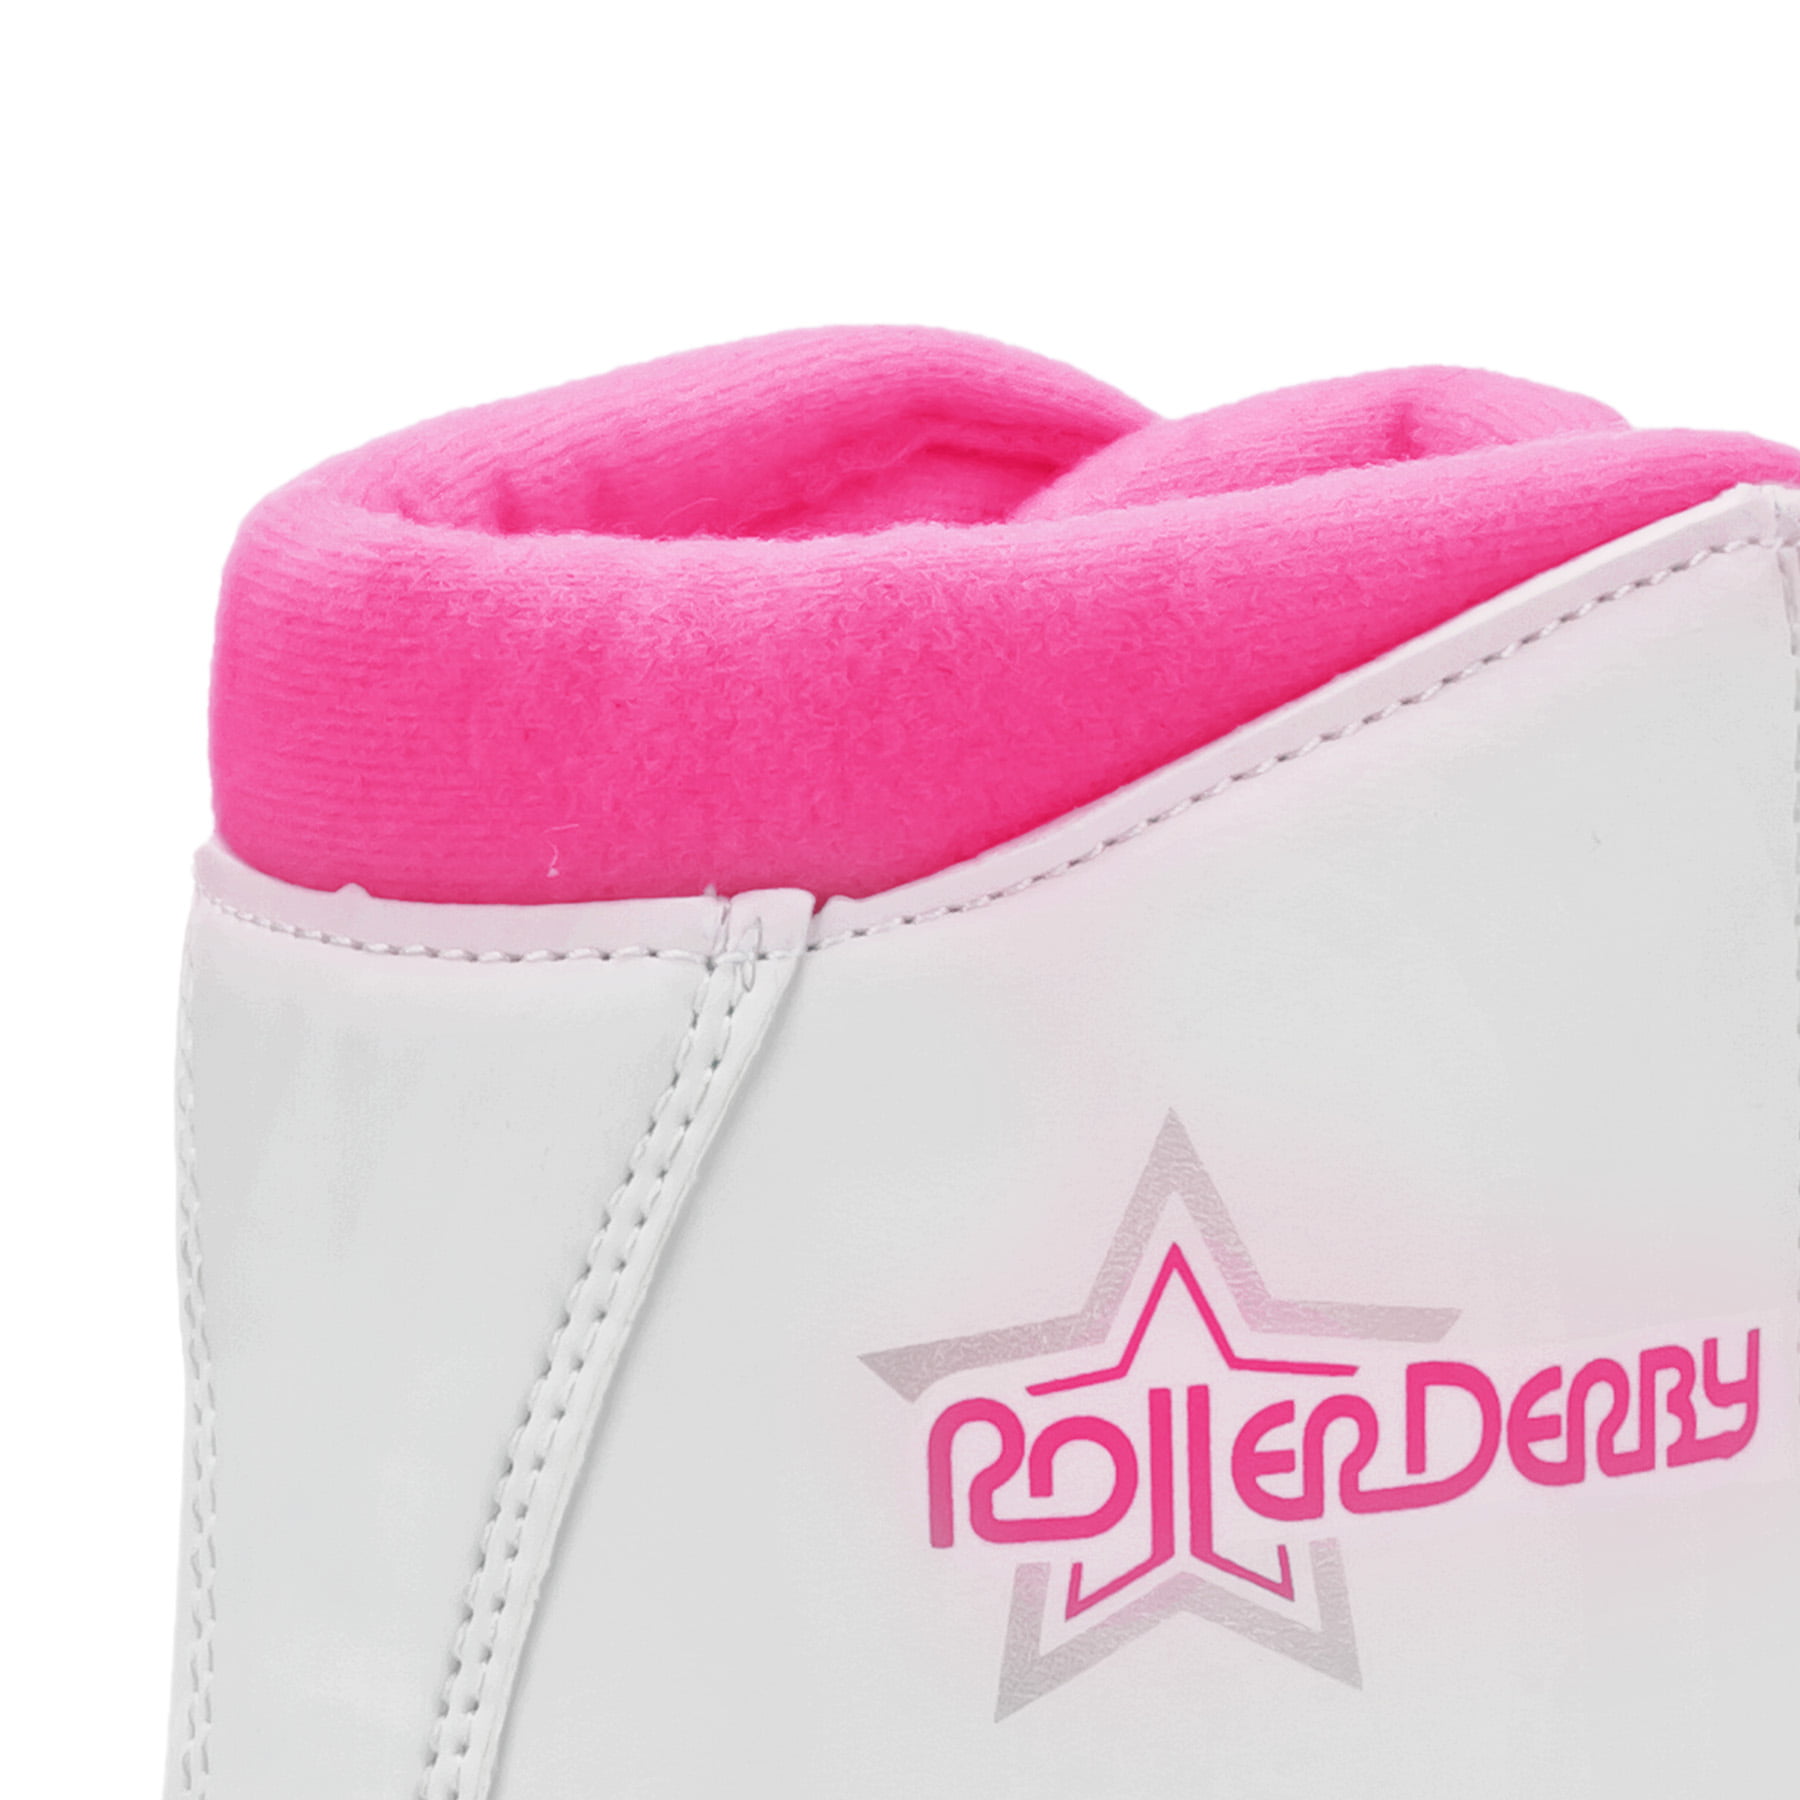 Roller Derby Roller Star 350 Girls Roller Skates Renewed 